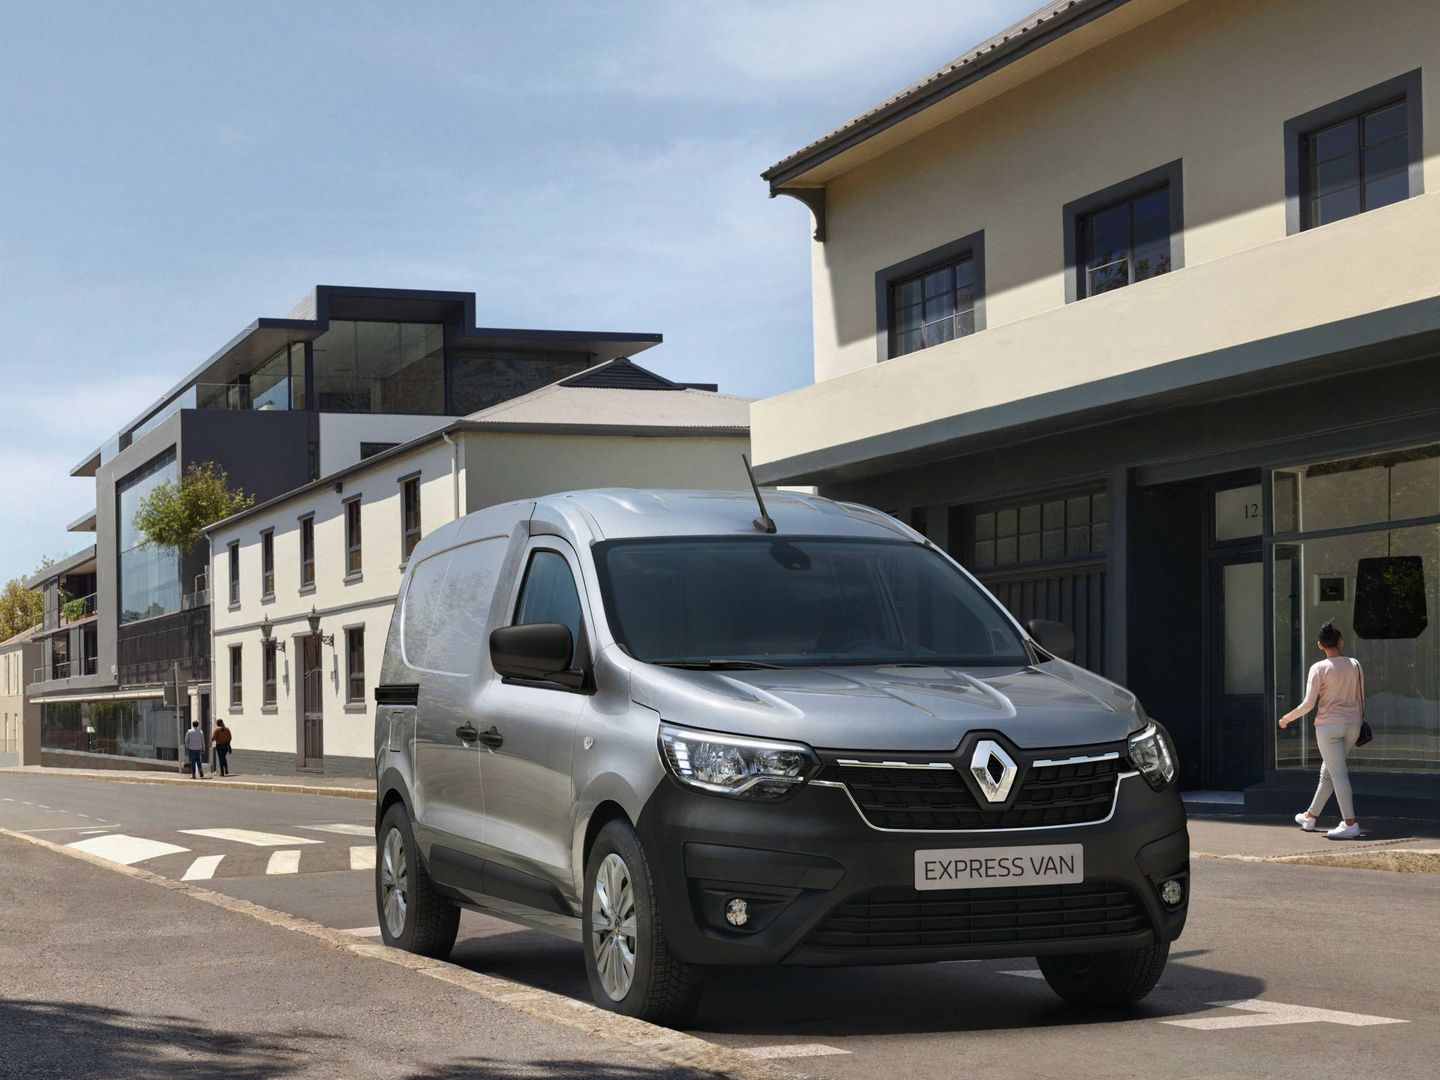 El Renault Express fue el modelo más vendido en España en 2023 con fórmulas de 'renting'.